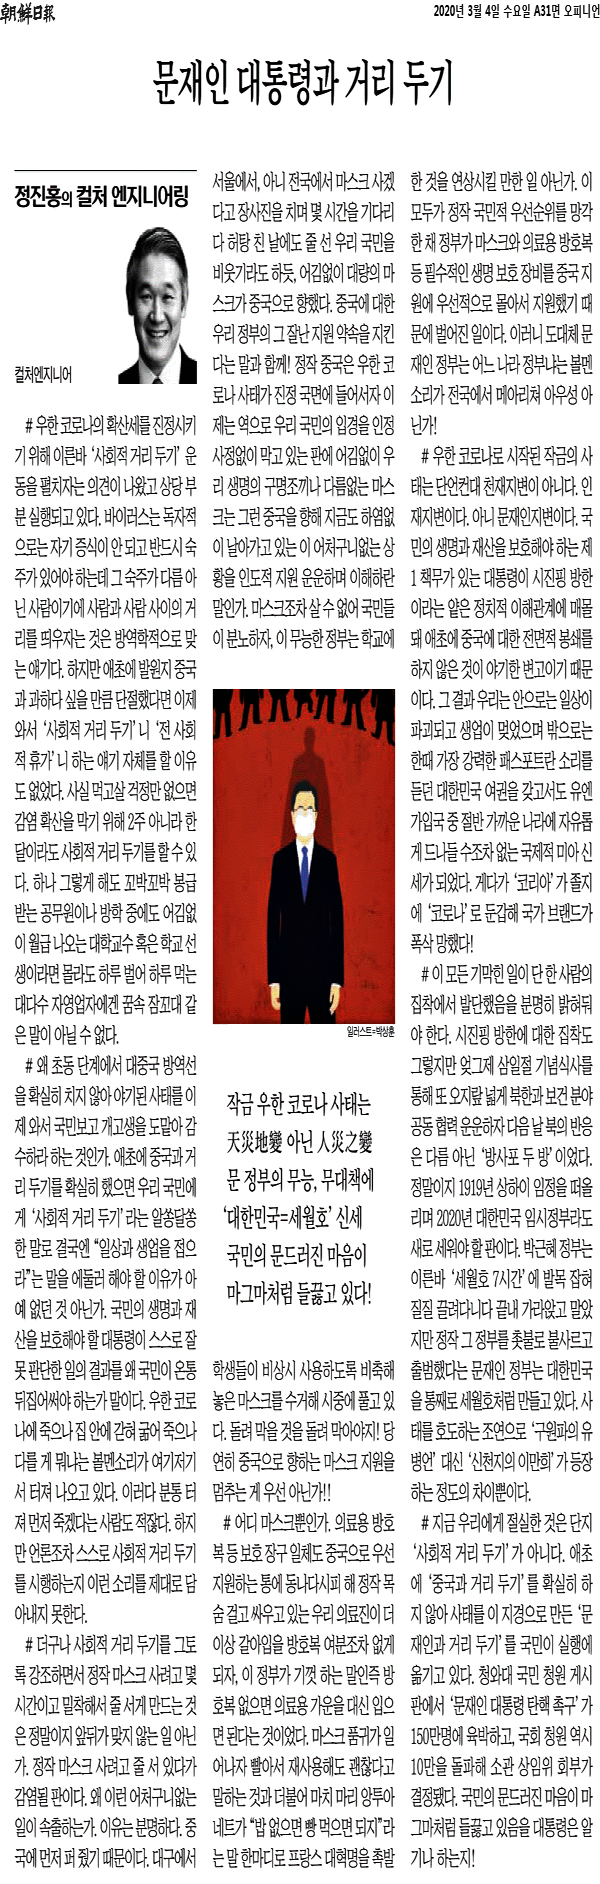 조선일보, 문 대통령 삽화도 범죄 기사 등에 '재사용'